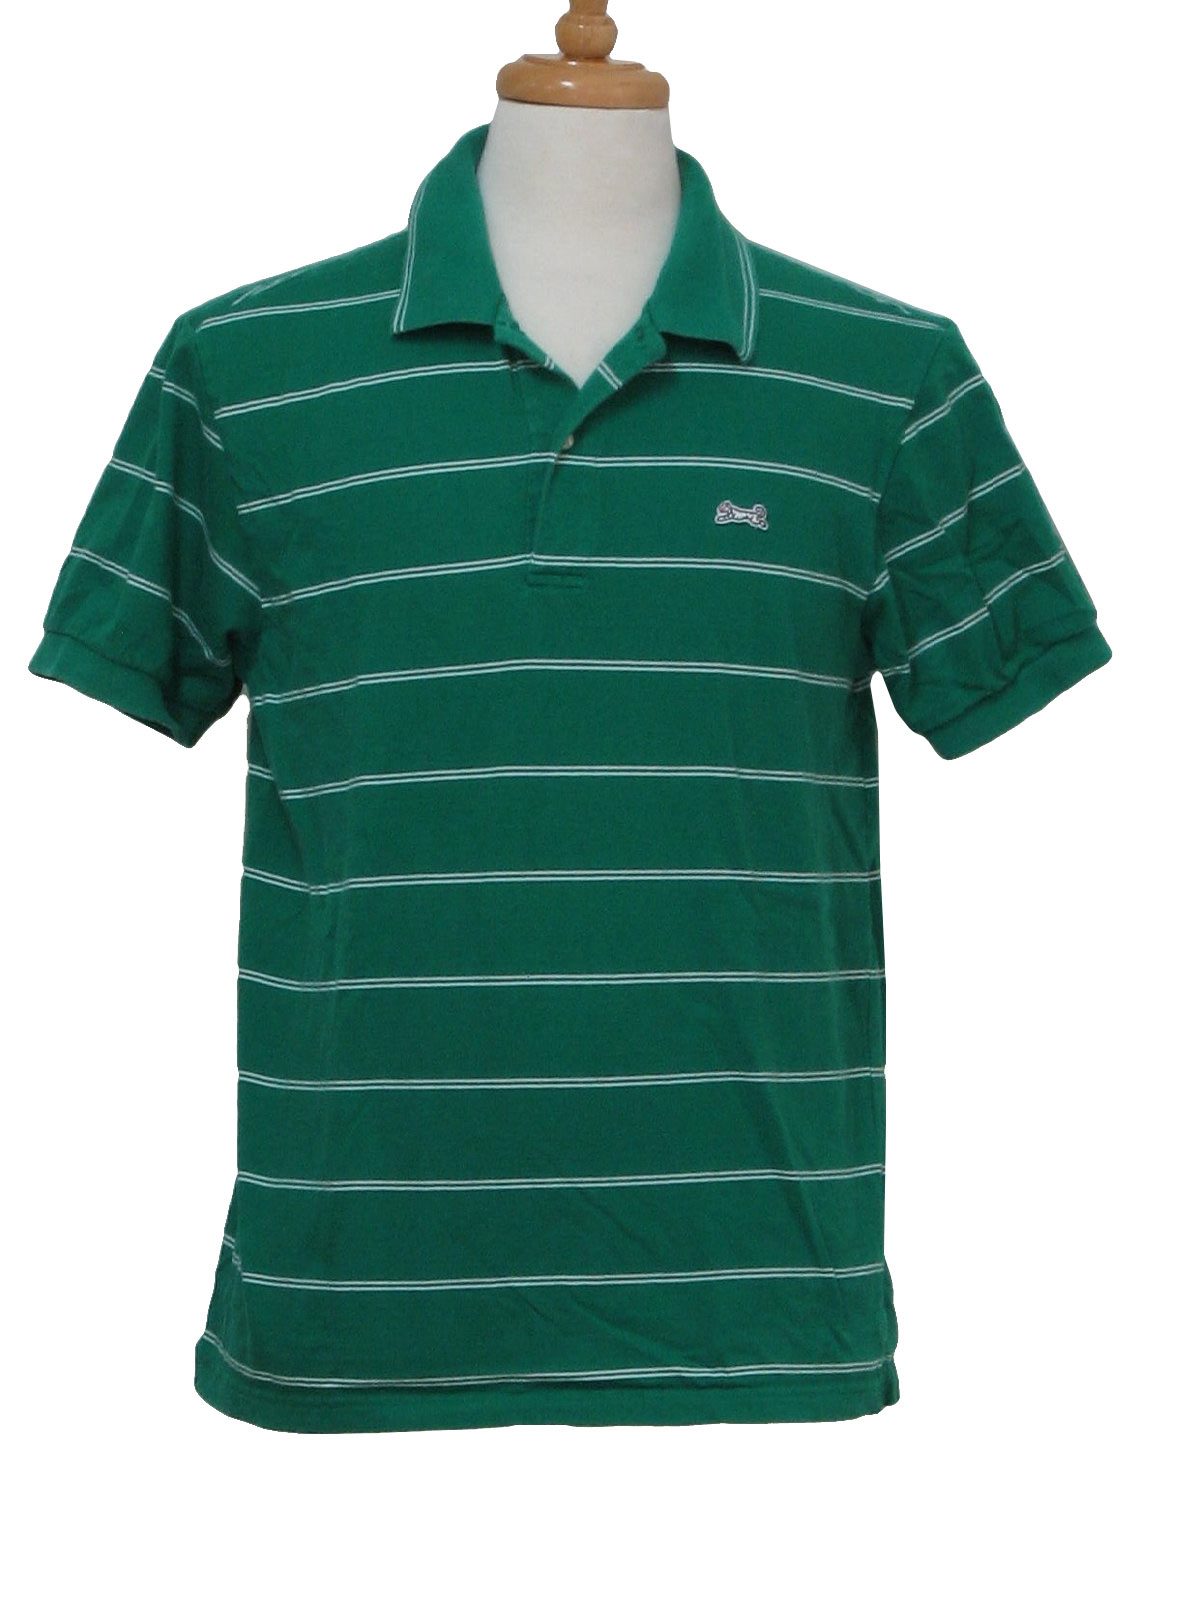 1980's Retro Shirt: 80s -LeTigre- Mens green and white horizontal ...